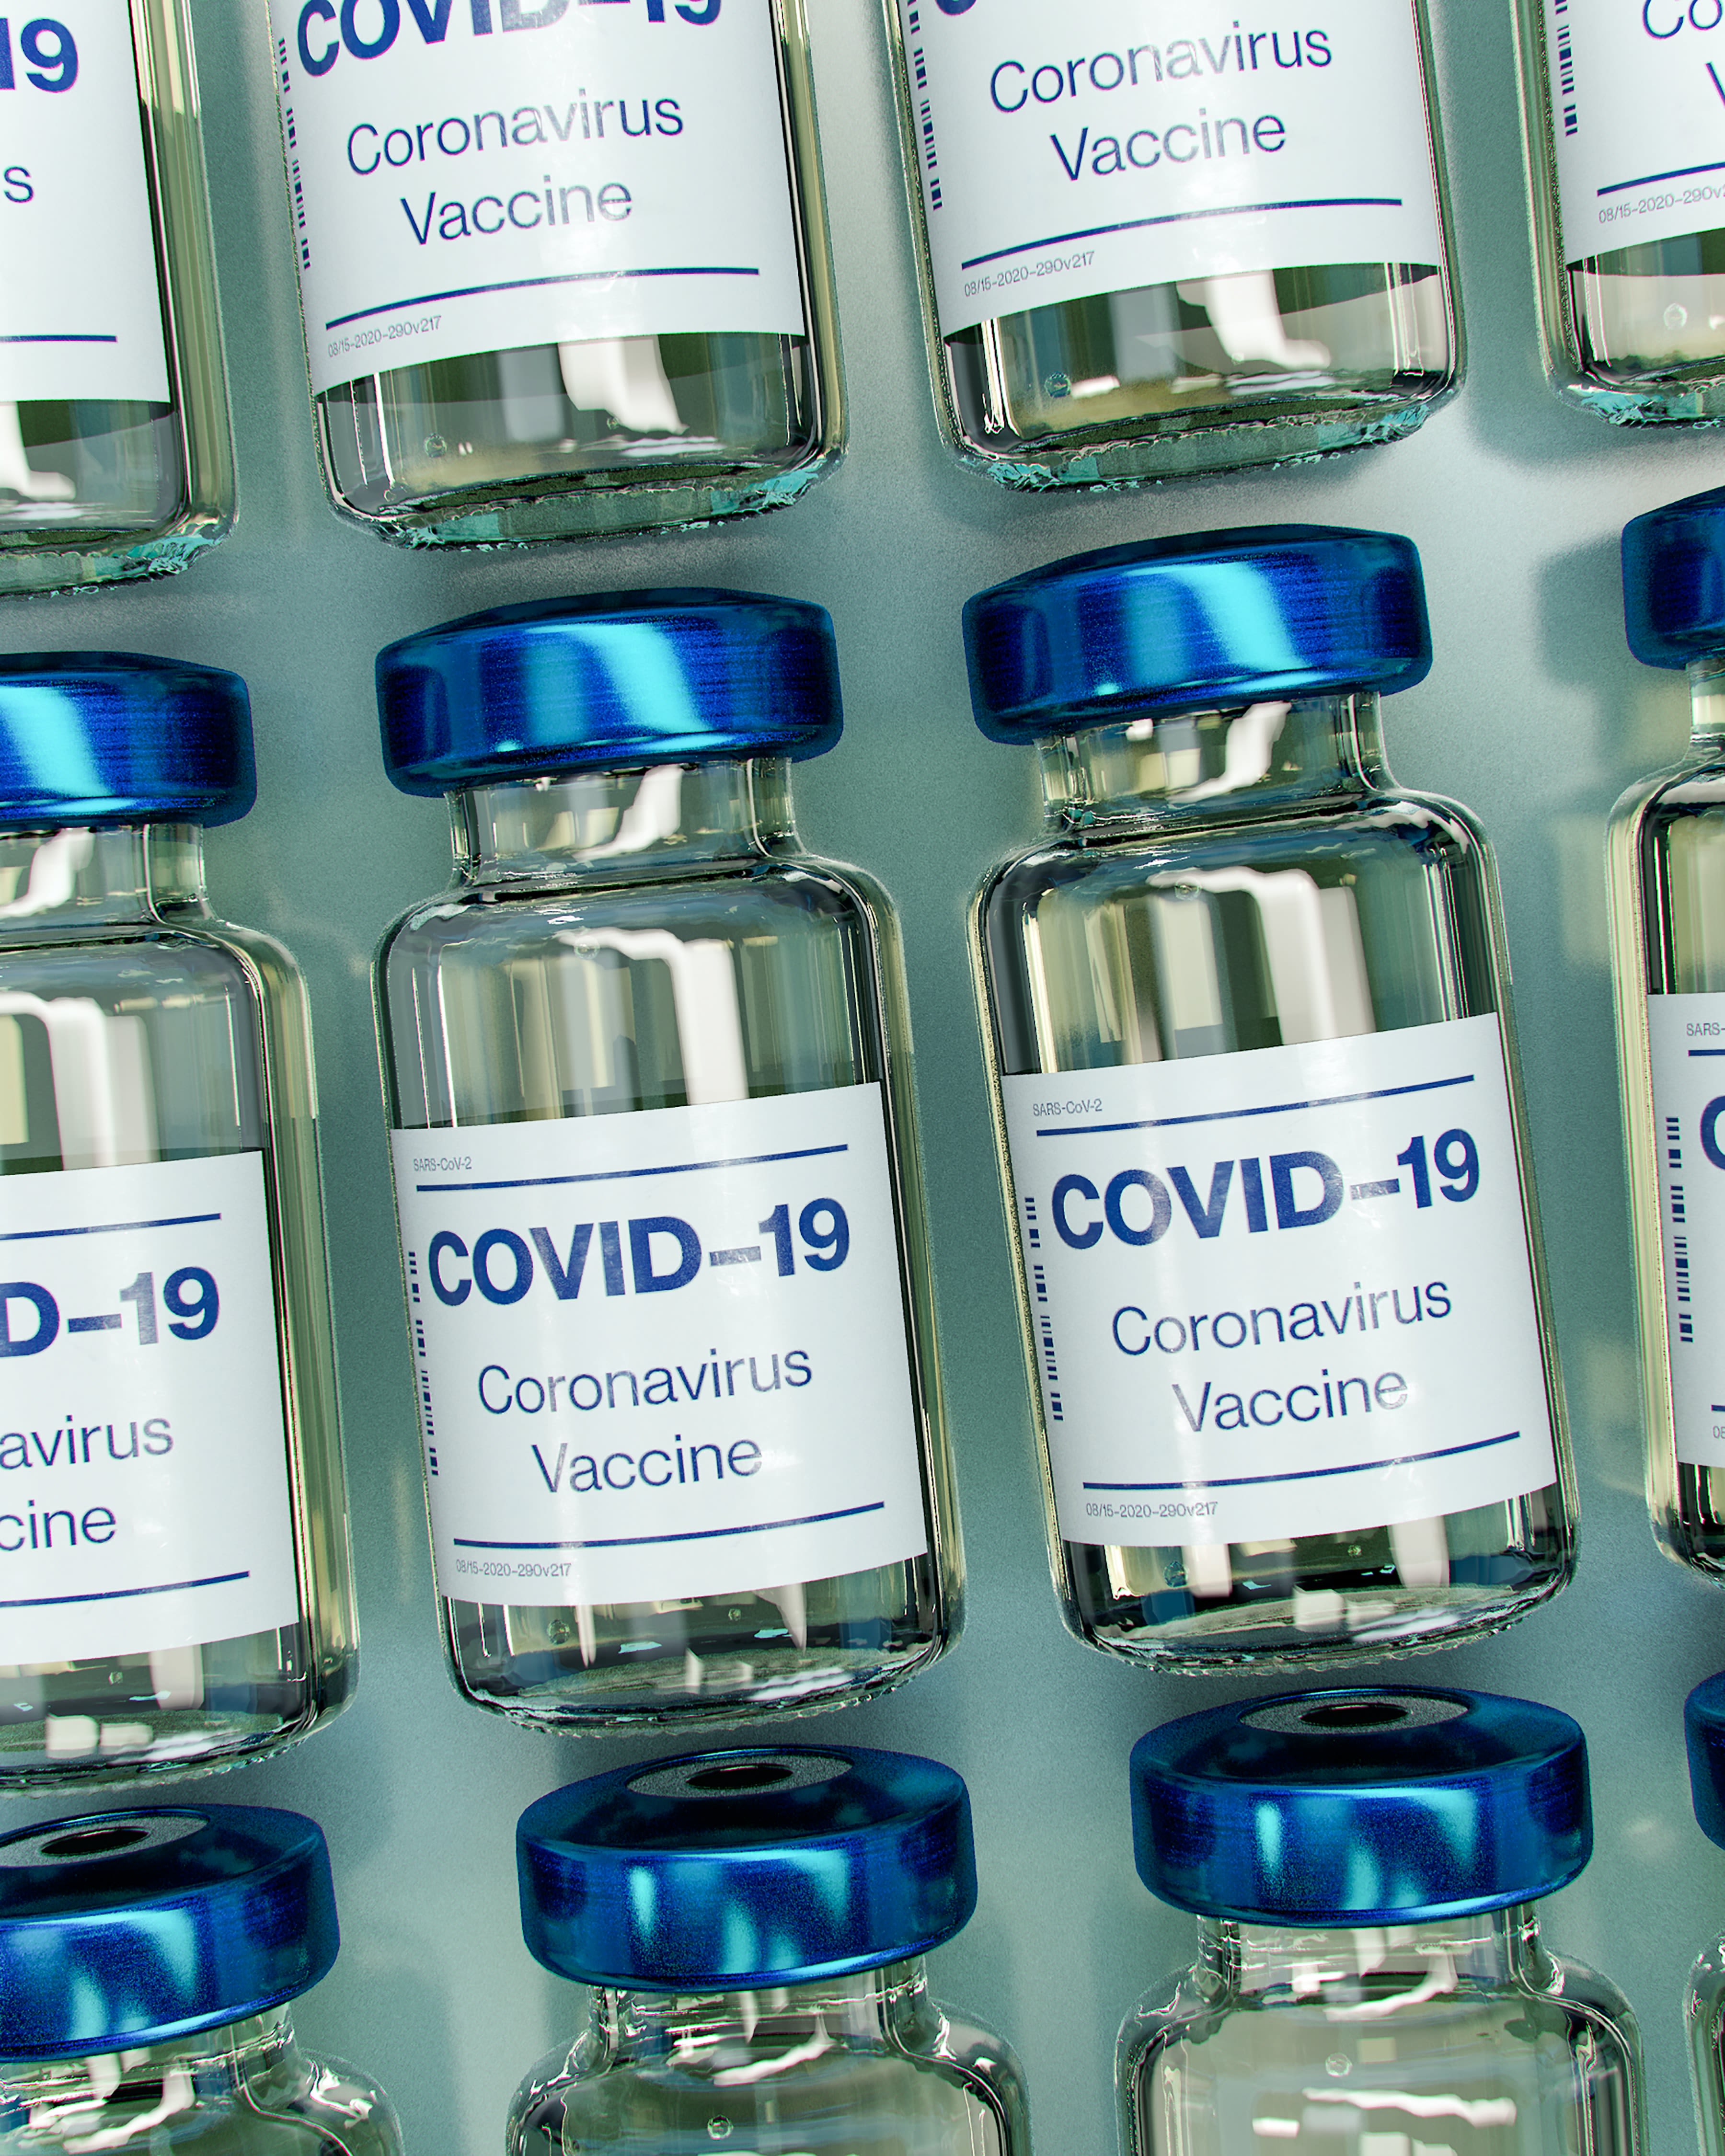 Is COVID-19 Still Dangerous?